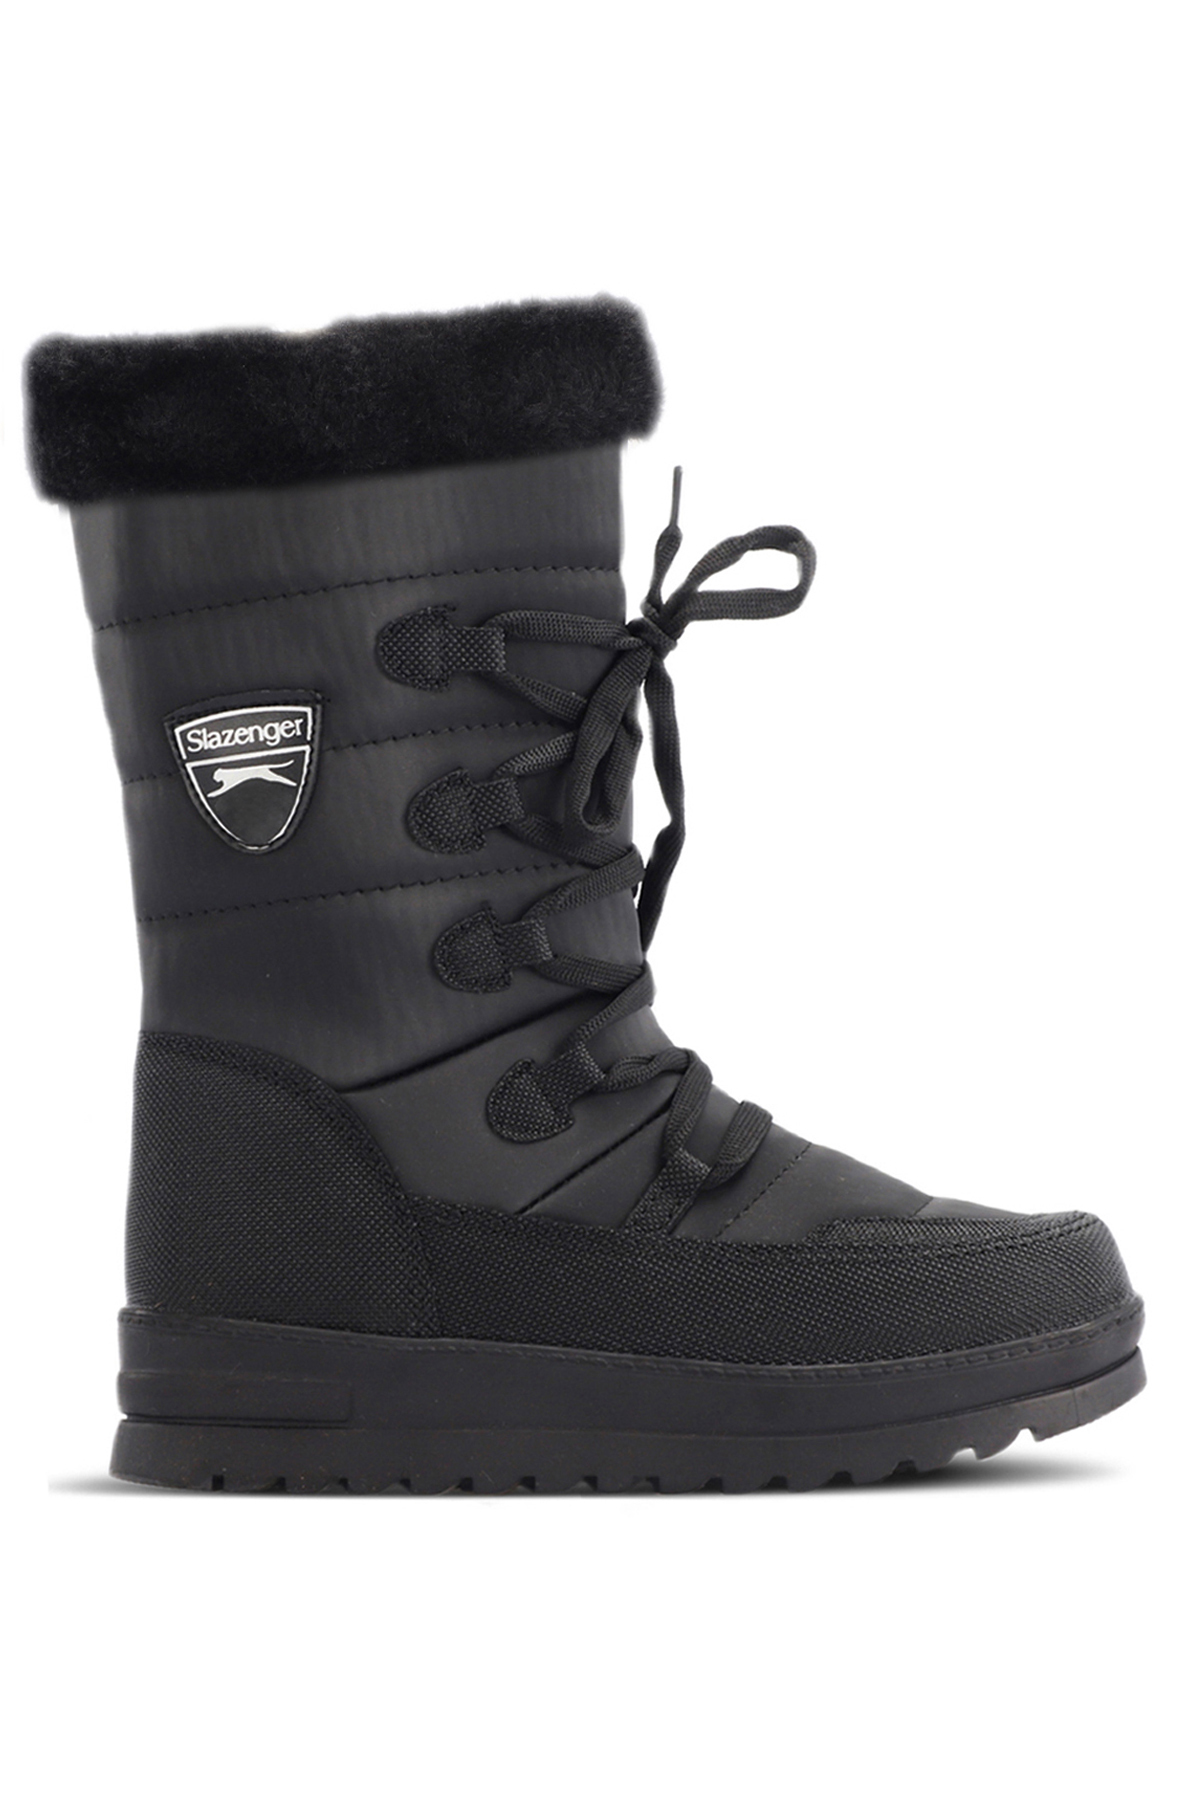 Levně Slazenger HOPE IN Women's Snow Boots Black / Black